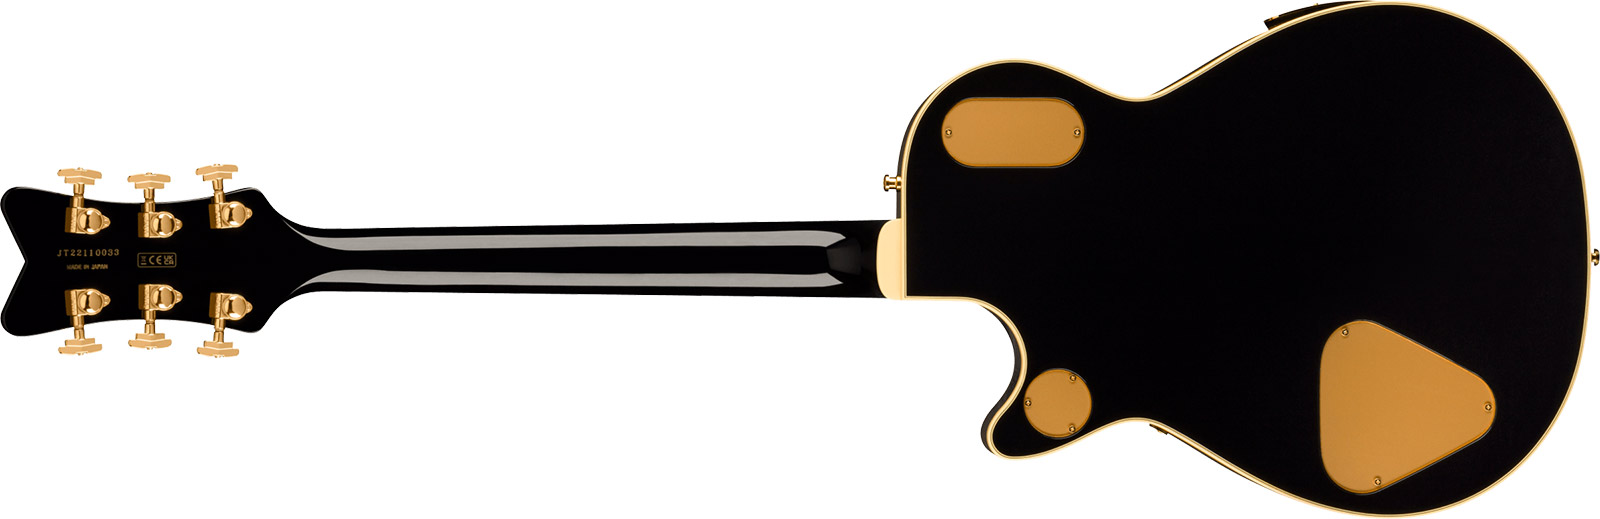 Gretsch G6134tg Paisley Penguin Bigsby Pro Jap 2h Trem Eb - Black Paisley - Guitare Électrique Single Cut - Variation 1